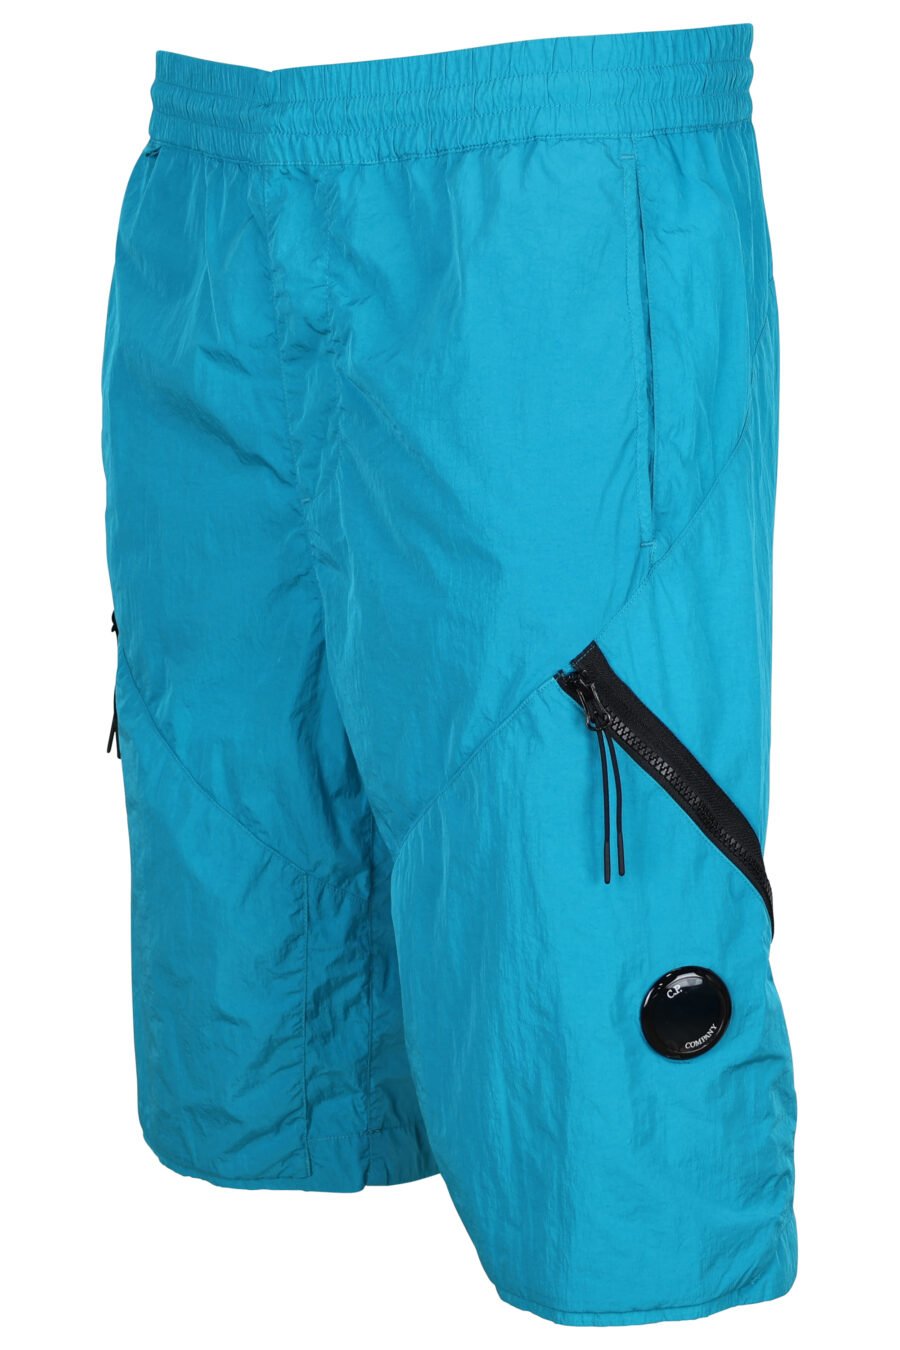 Pantalón corto azul turquesa con cremallera diagonal y logo lente - 7620943384529 1